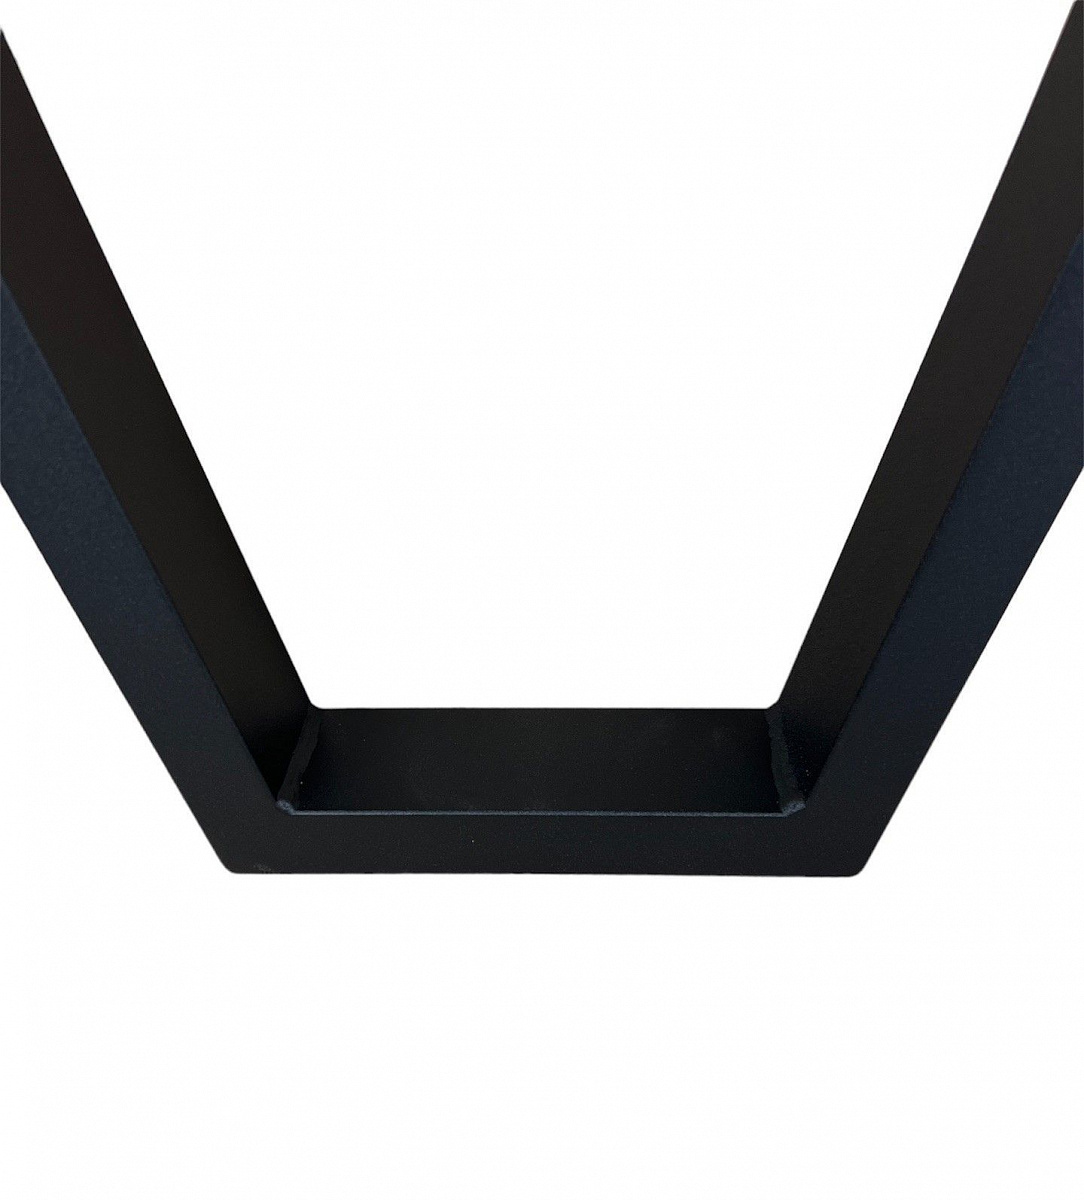 Опора для стола V-образная 72 см, черная